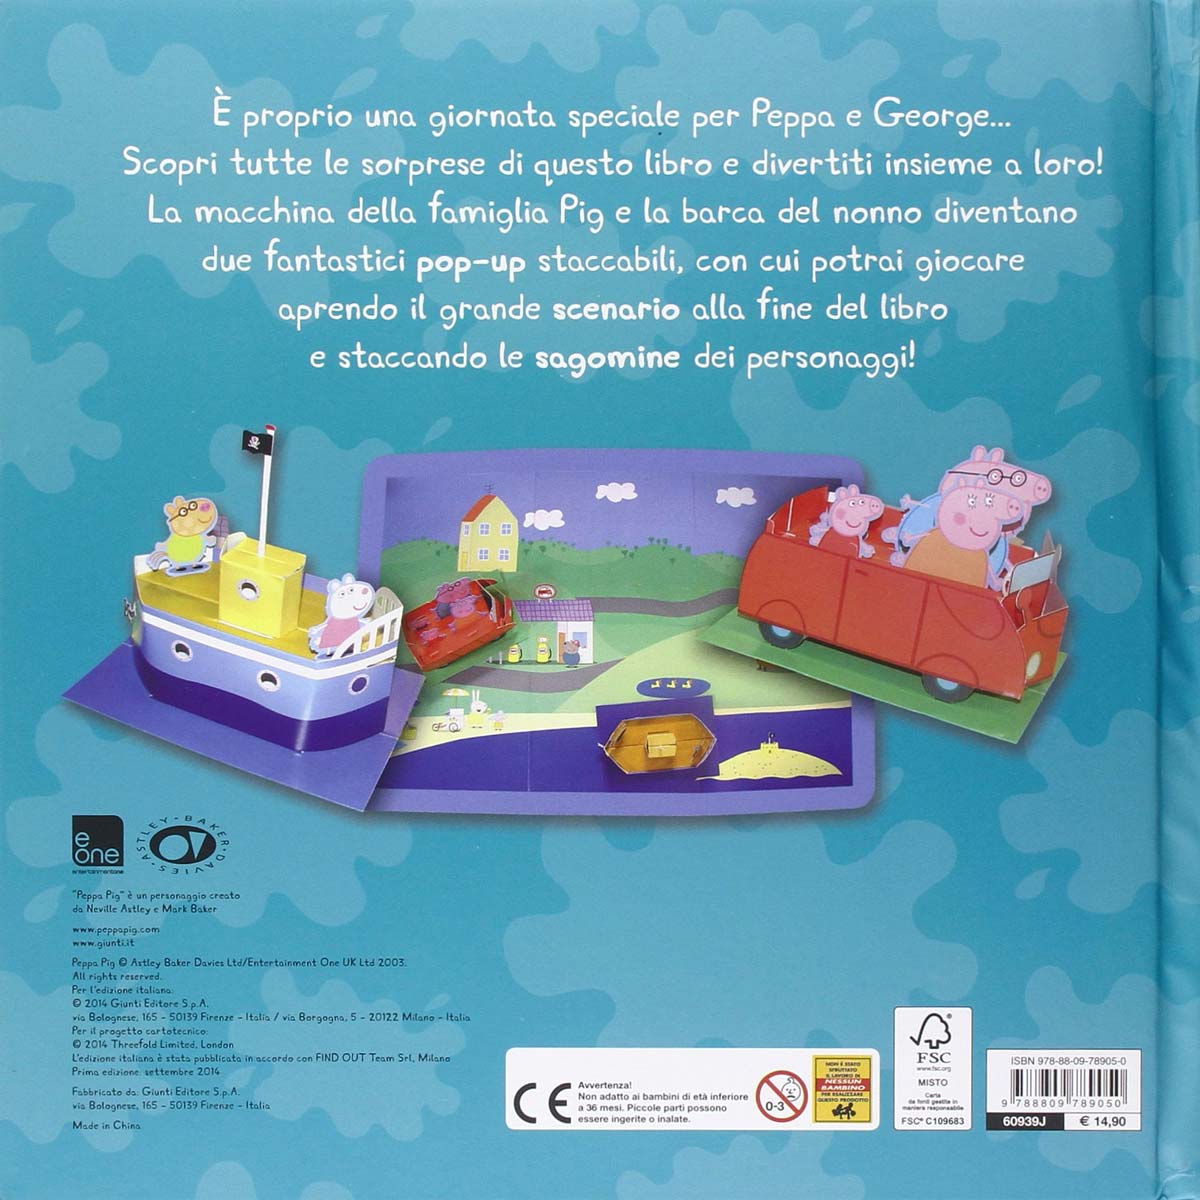 Peppa Pig. Una giornata speciale back | Original italienische Bücher lesen: Welches ist das richtige Buch für mich?